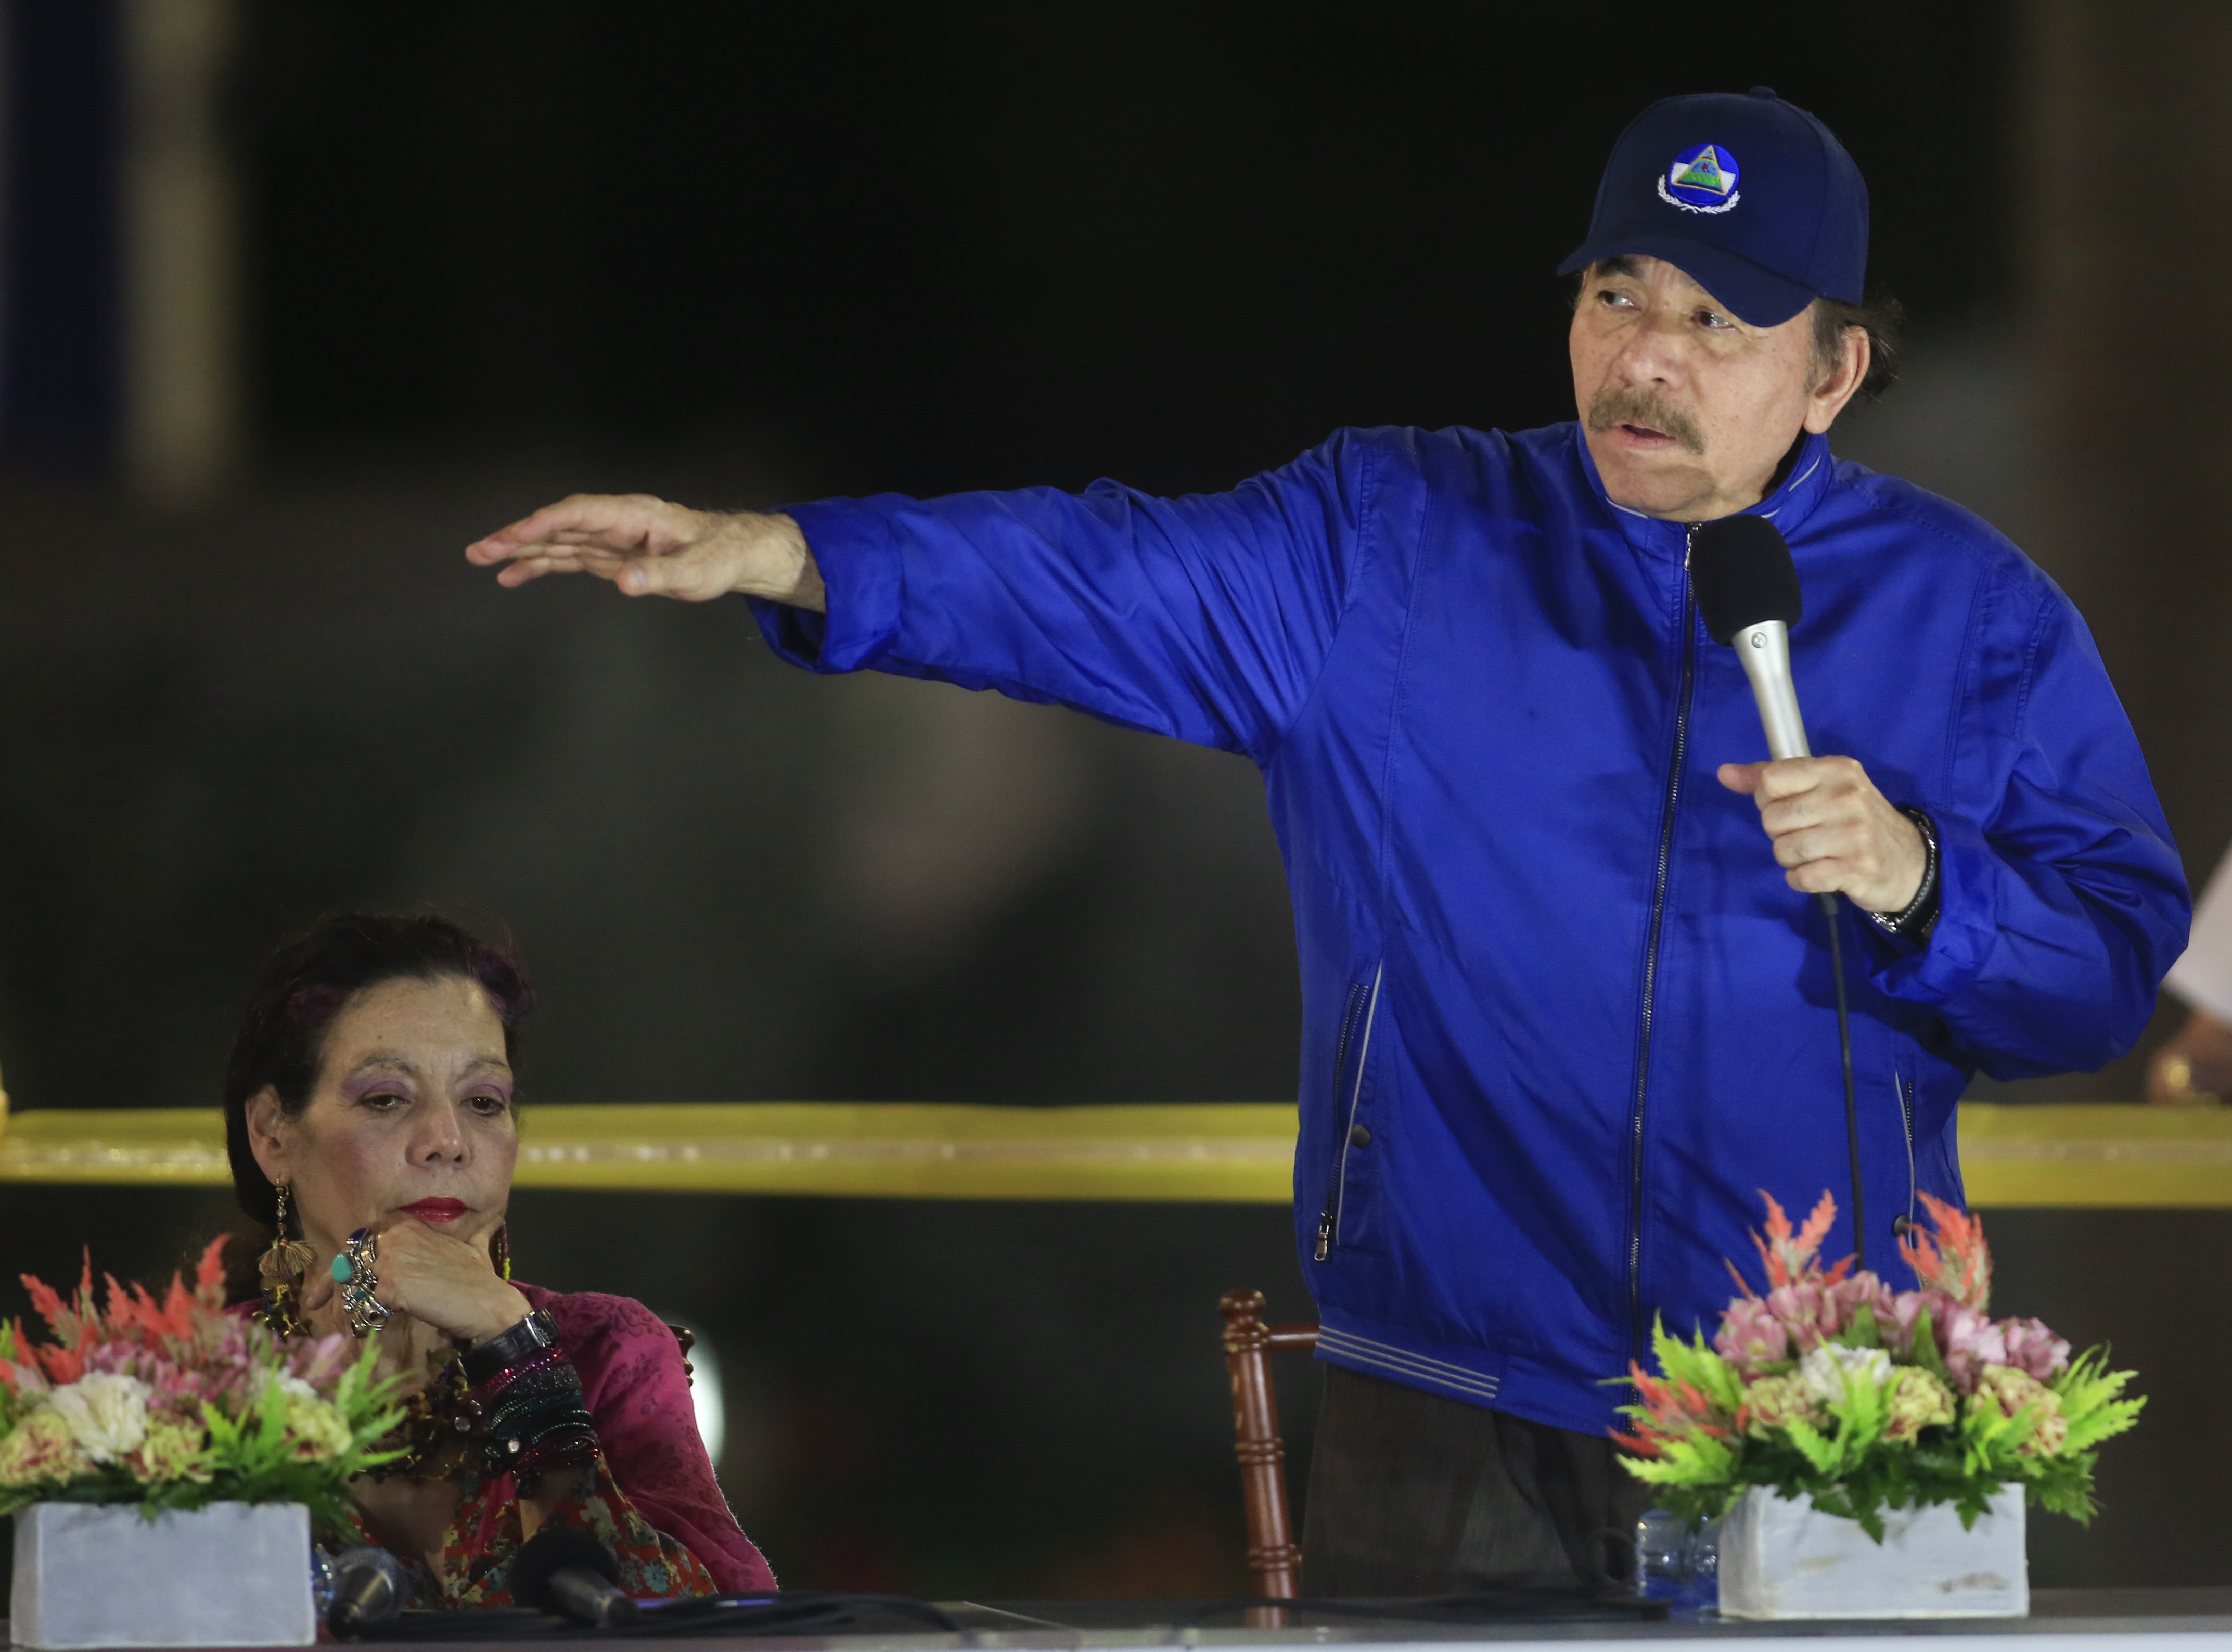 ARCHIVO - En esta fotografía de archivo del 21 de marzo de 2019, Daniel Ortega, habla junto a la primera dama y la vicepresidenta Rosario Murillo durante la ceremonia de inauguración de un paso elevado de la carretera en Managua, Nicaragua. (AP Foto/Alfredo Zuniga, Archivo)